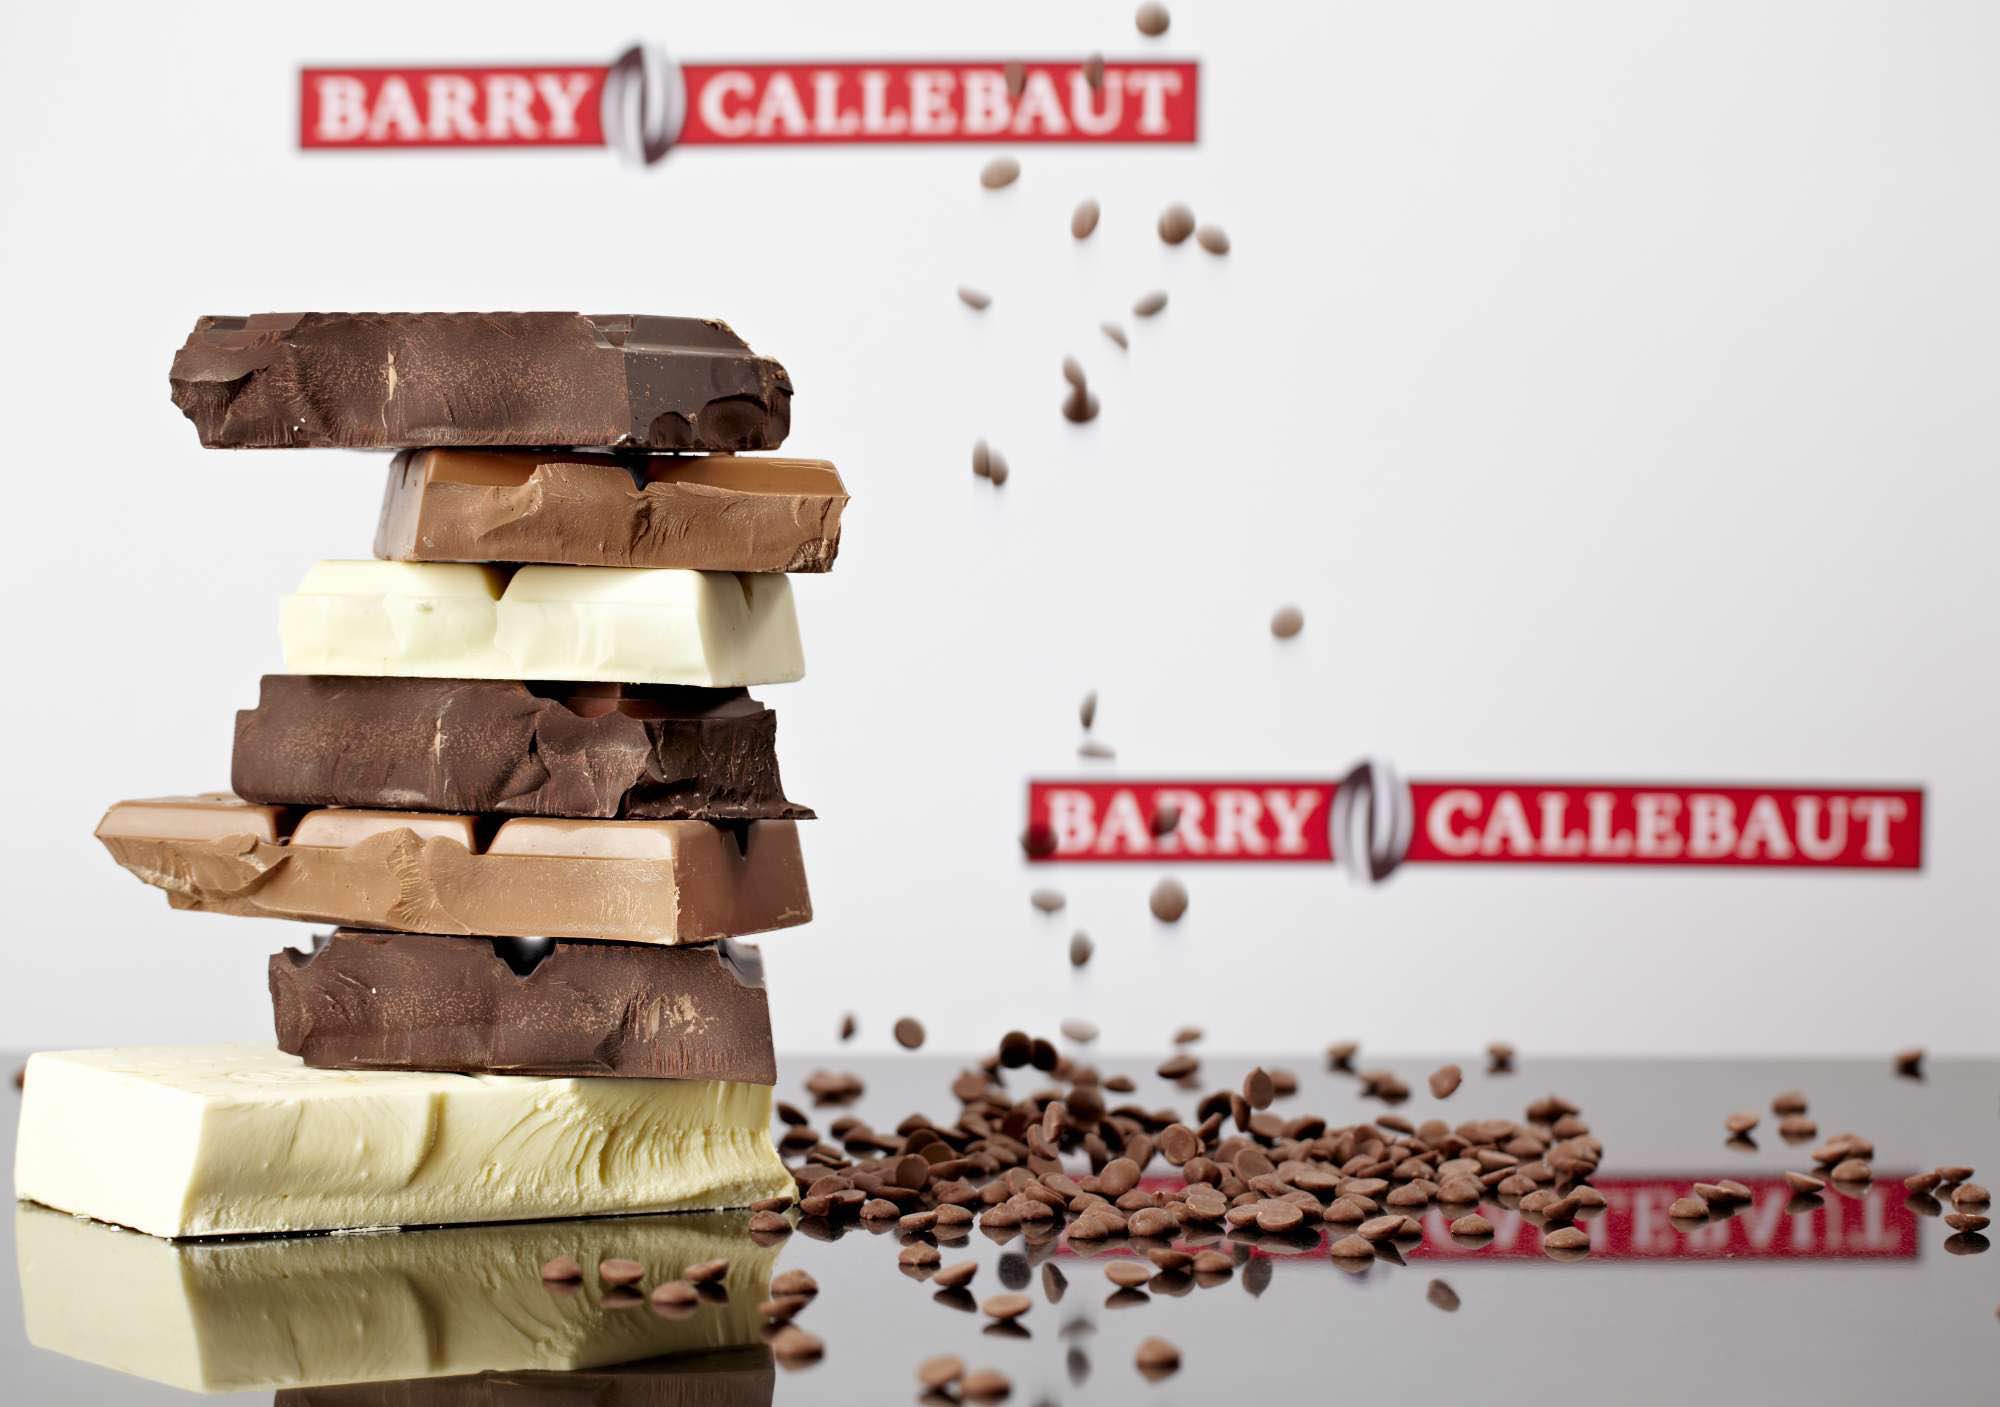 25th anniversary, Barry Callebaut,